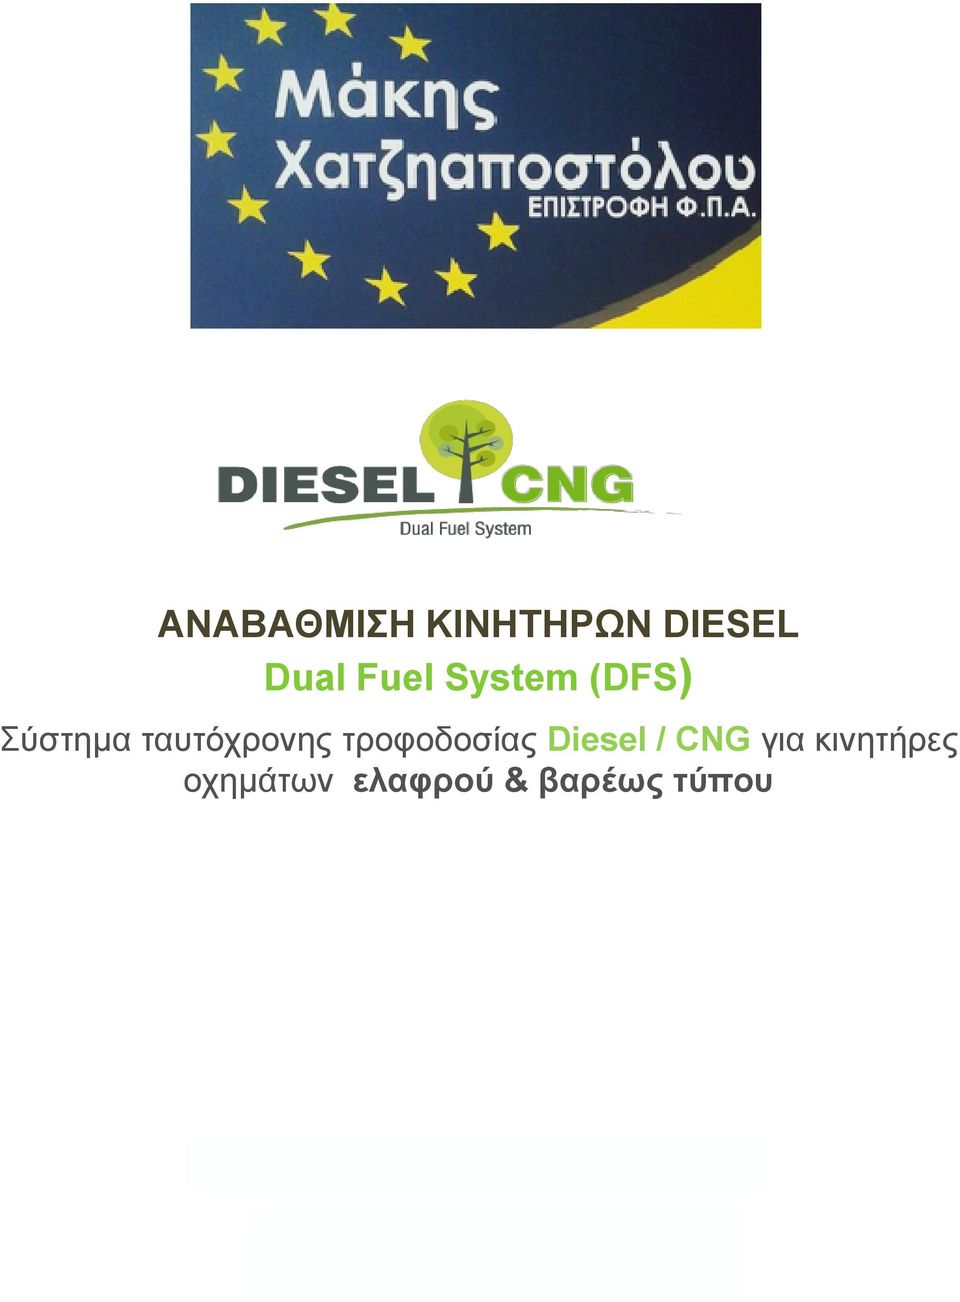 ηξνθνδνζίαο Diesel / CNG γηα θηλεηήξεο